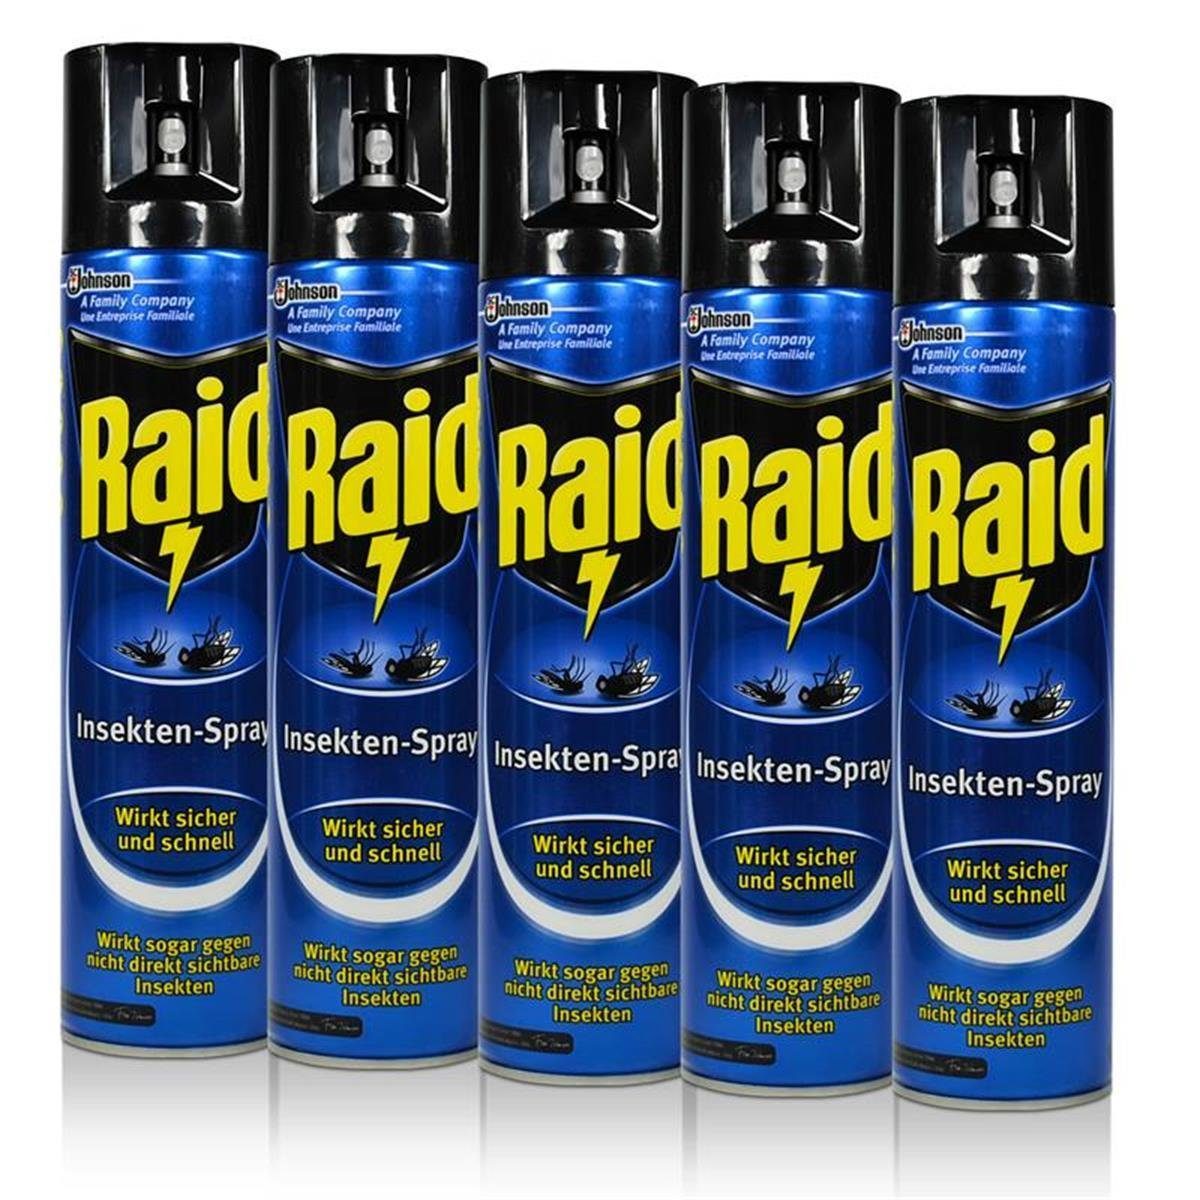 Raid Insektenfalle 5x Raid Insekten-Spray 400 ml - Wirkt sicher und schnell